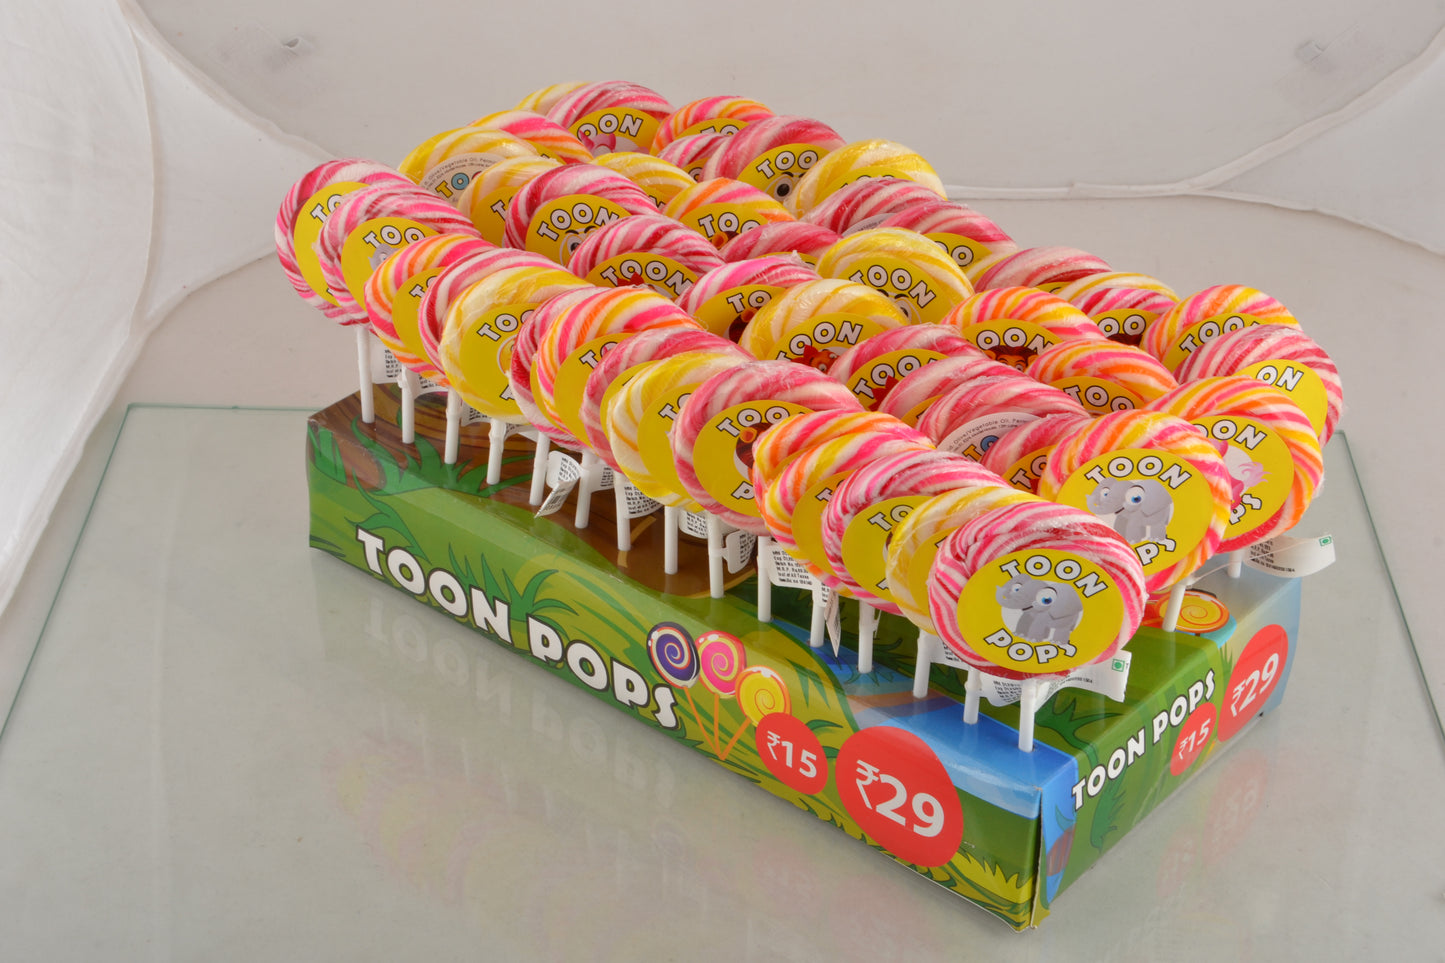 Assorted Fruit | Cartoon Lollipops | Pack  of 60 | Toonpops